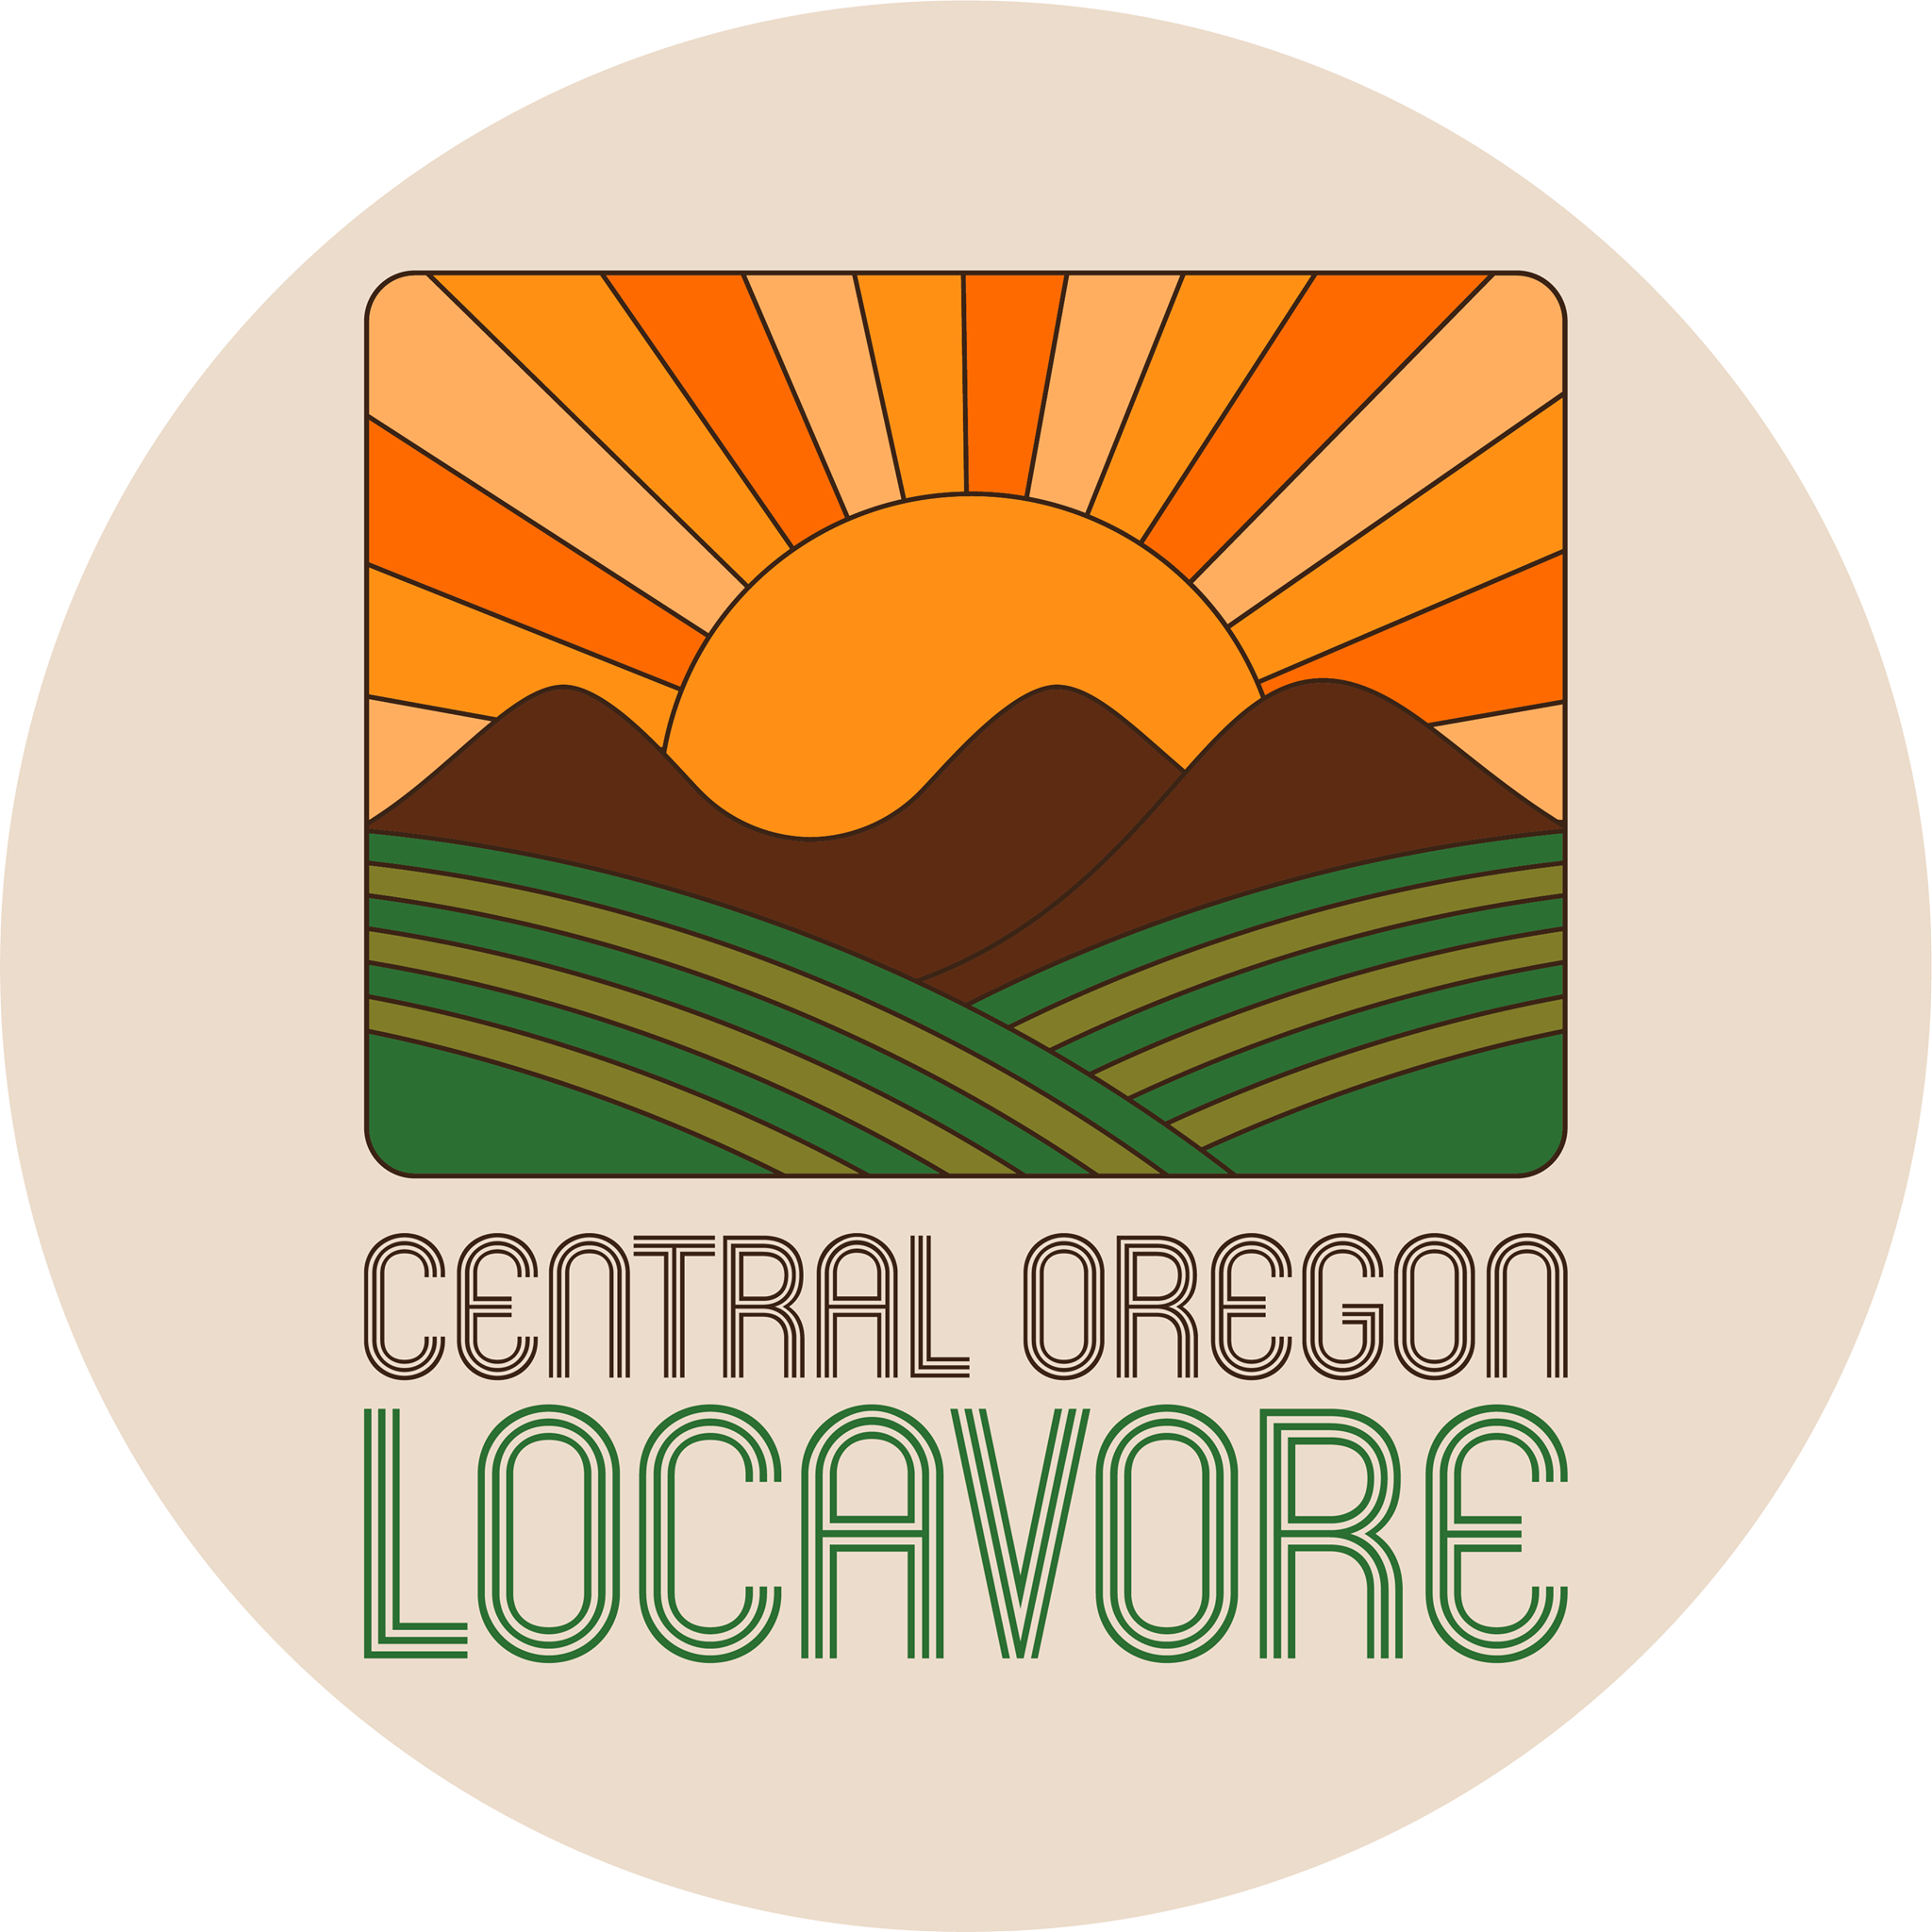 Company logo of Central Oregon Locavore Indoor Farmers Market